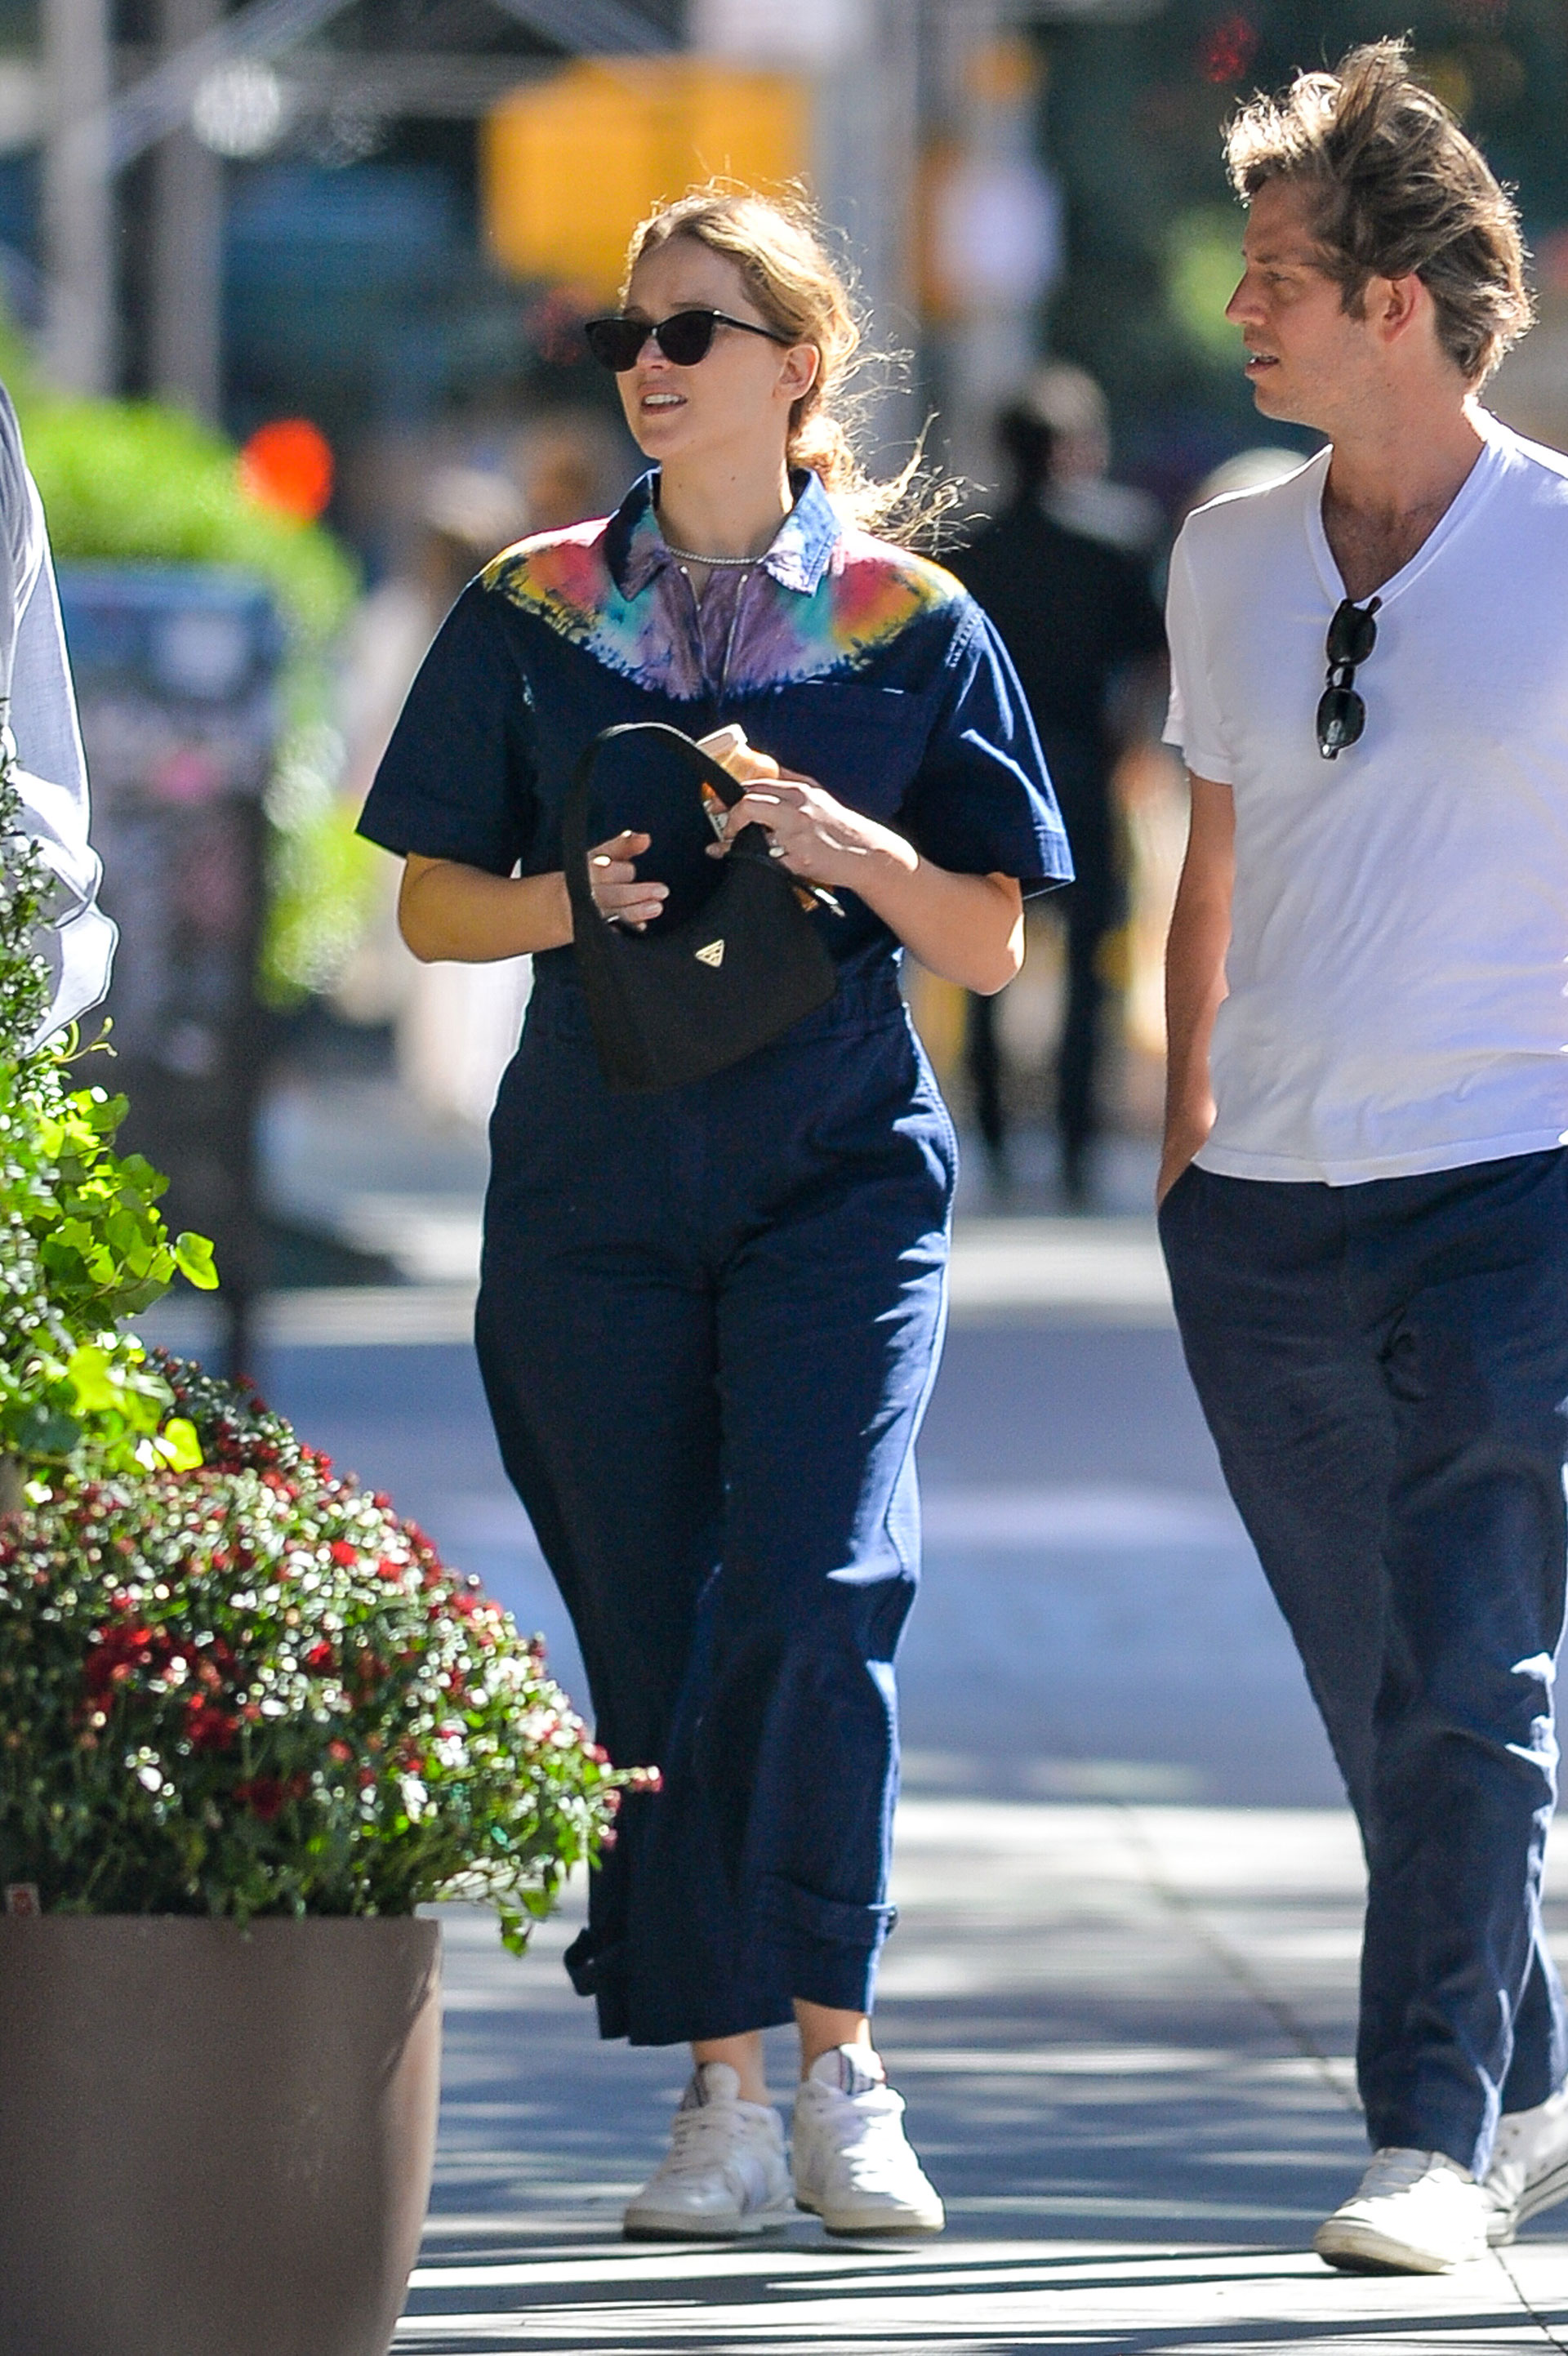 Romántico paseo. Jennifer Lawrence y su esposo Cooke Maroney recorrieron las calles de Nueva York. La actriz, que está embarazada, lució un catsuit azul con batik en el cuello, y su pareja optó por un pantalón oscuro y una remera blanca